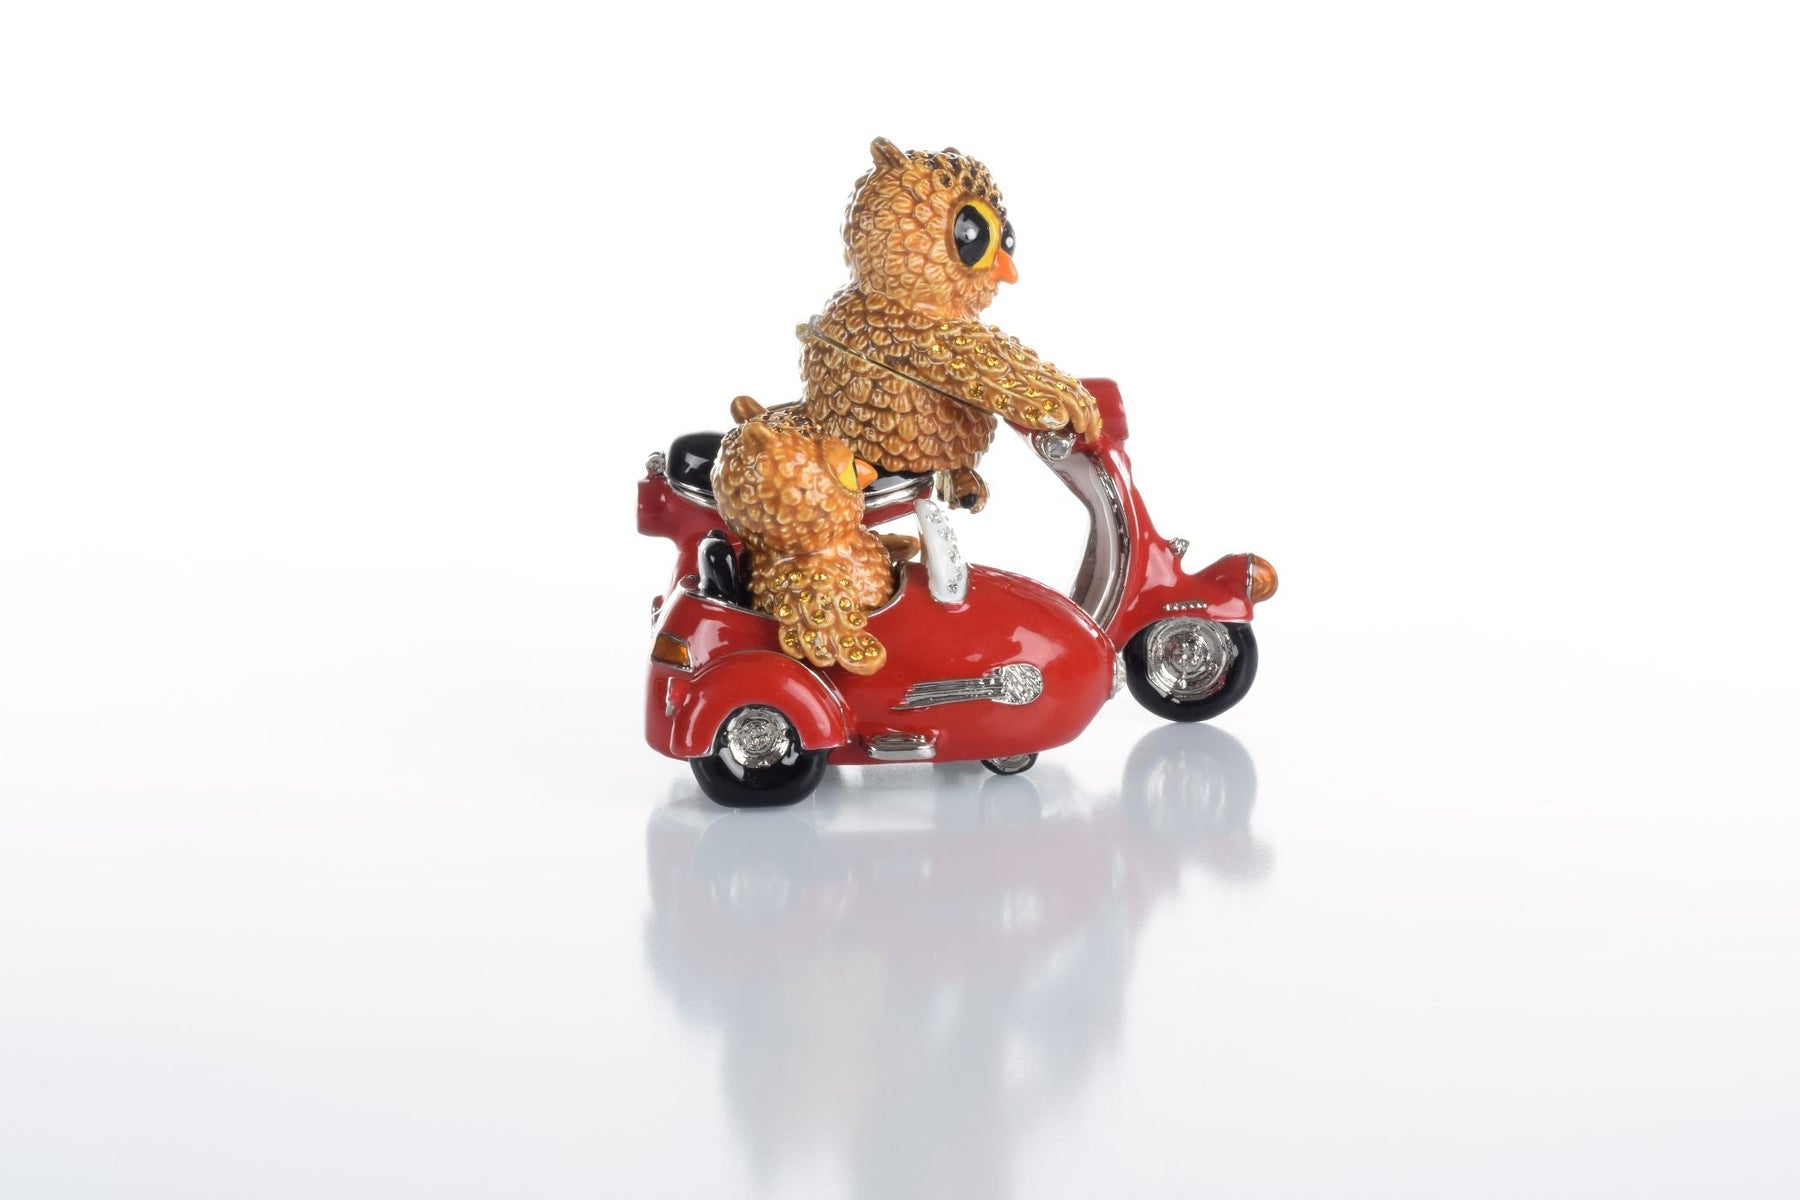 Rotes Fahrrad Brown Owl &amp; Owlet mit Beiwagen. Limitierte Auflage 1 von 250